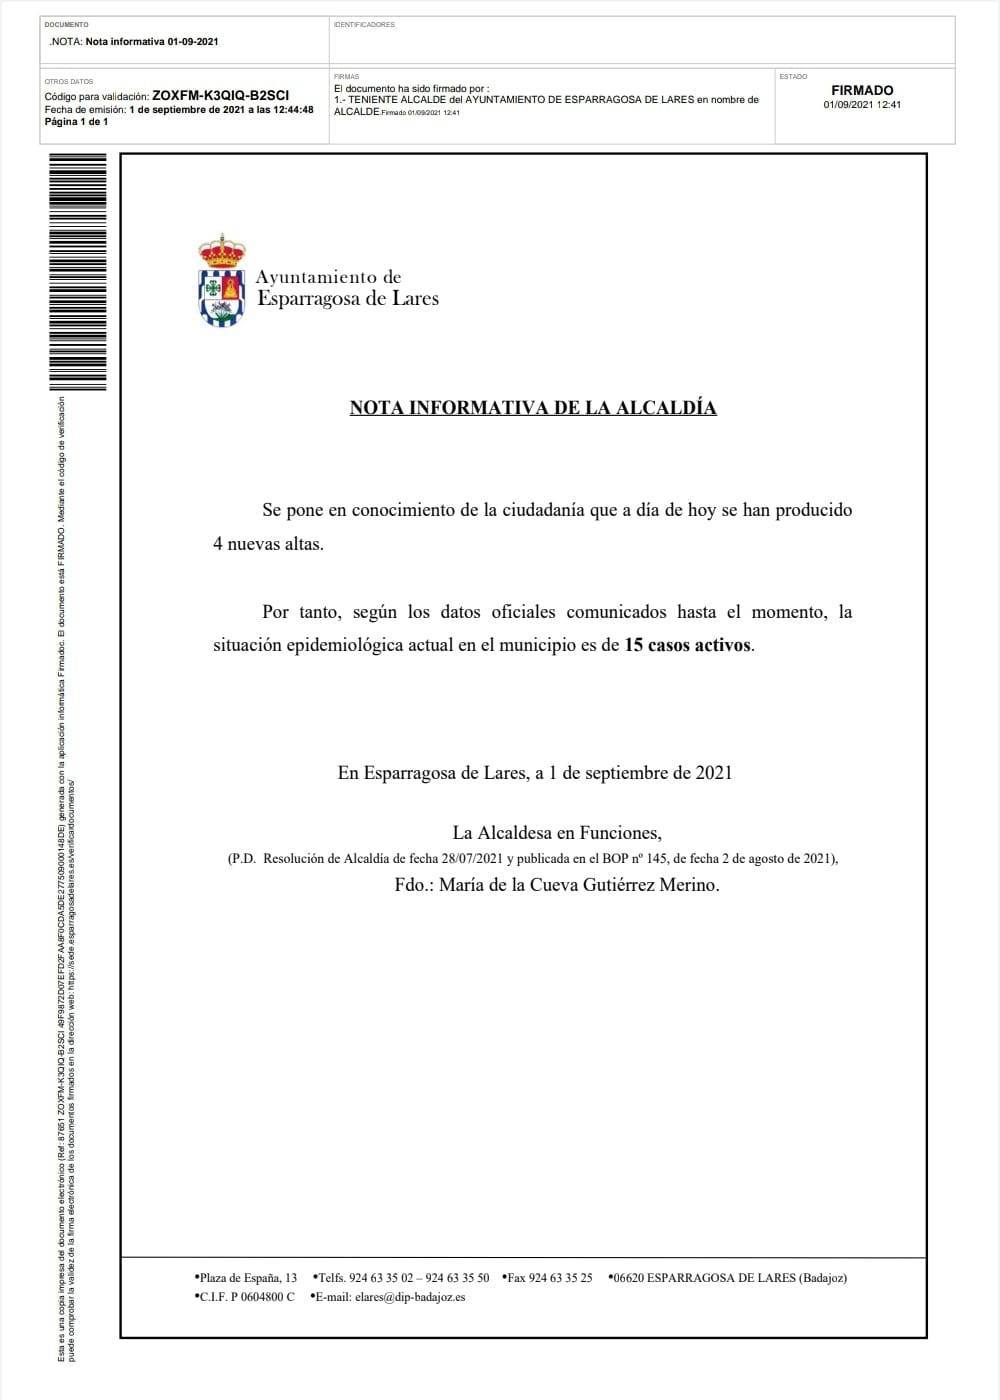 15 casos positivos activos de COVID-19 (septiembre 2021) - Esparragosa de Lares (Badajoz)